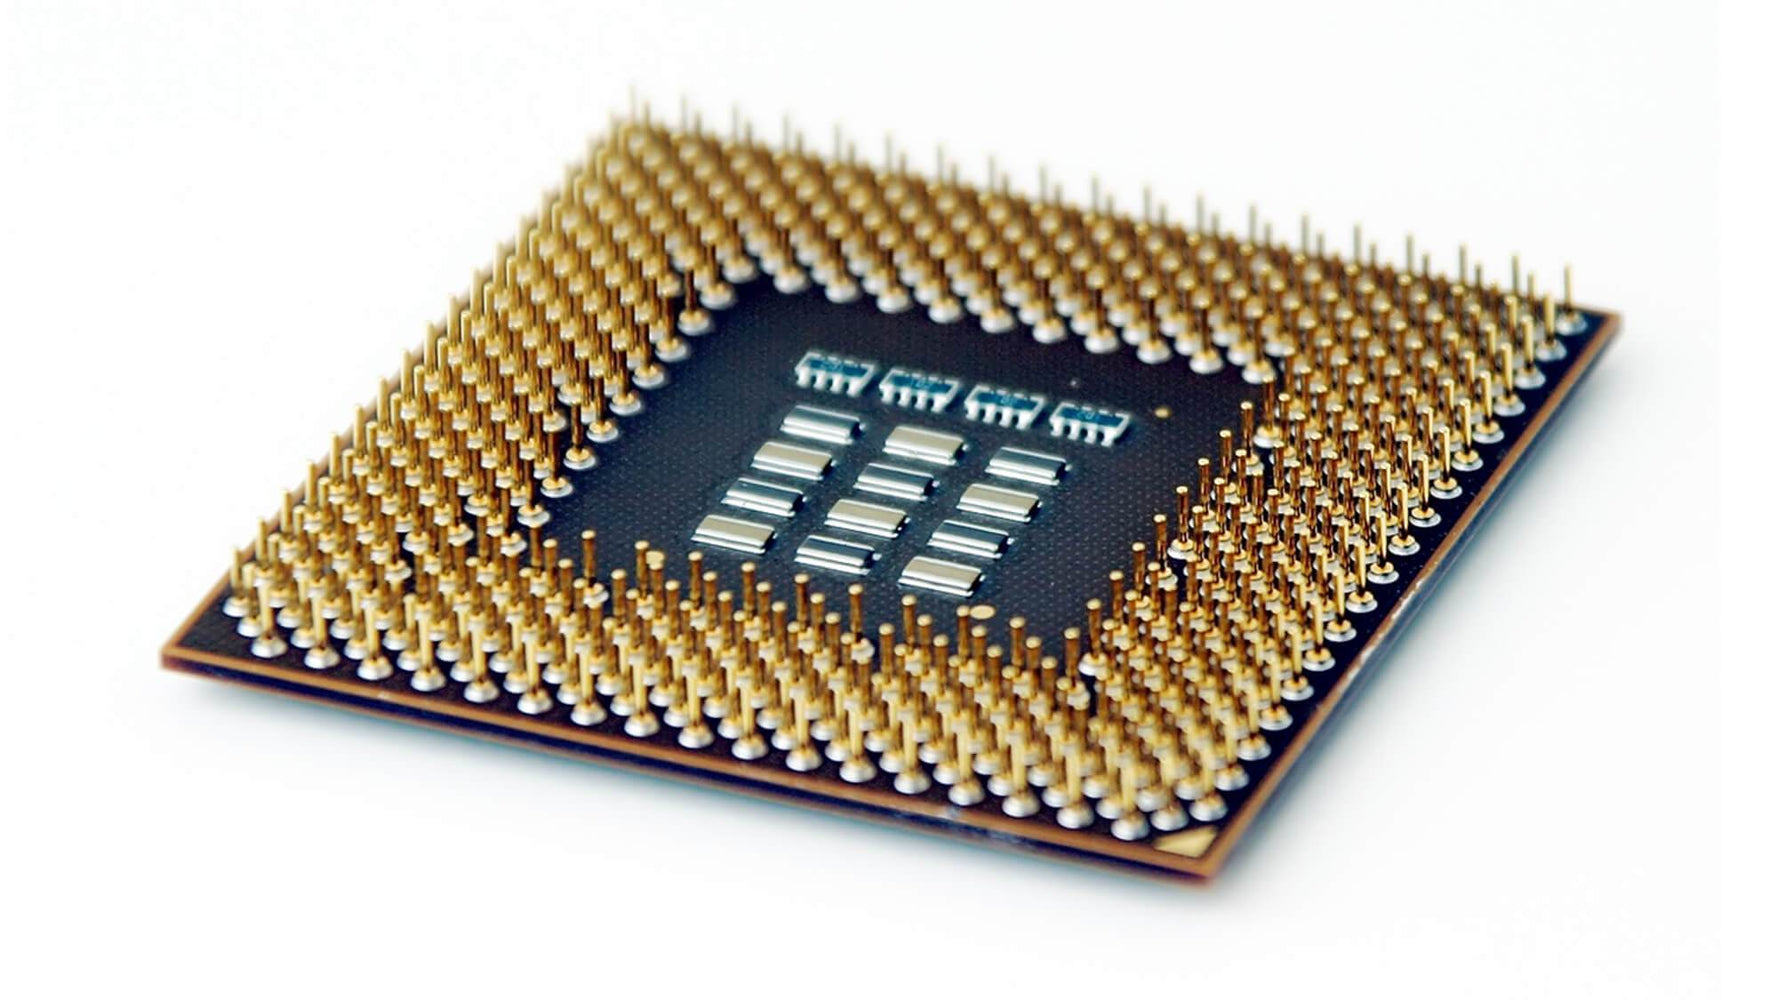 766374-B21 - HP 2.60GHz 9.60GT/s QPI 25MB L3 Cache Socket LGA2011-3 Intel Xeon E5-2660V3 10-Core Processor for ProLiant DL380 Gen9 Server